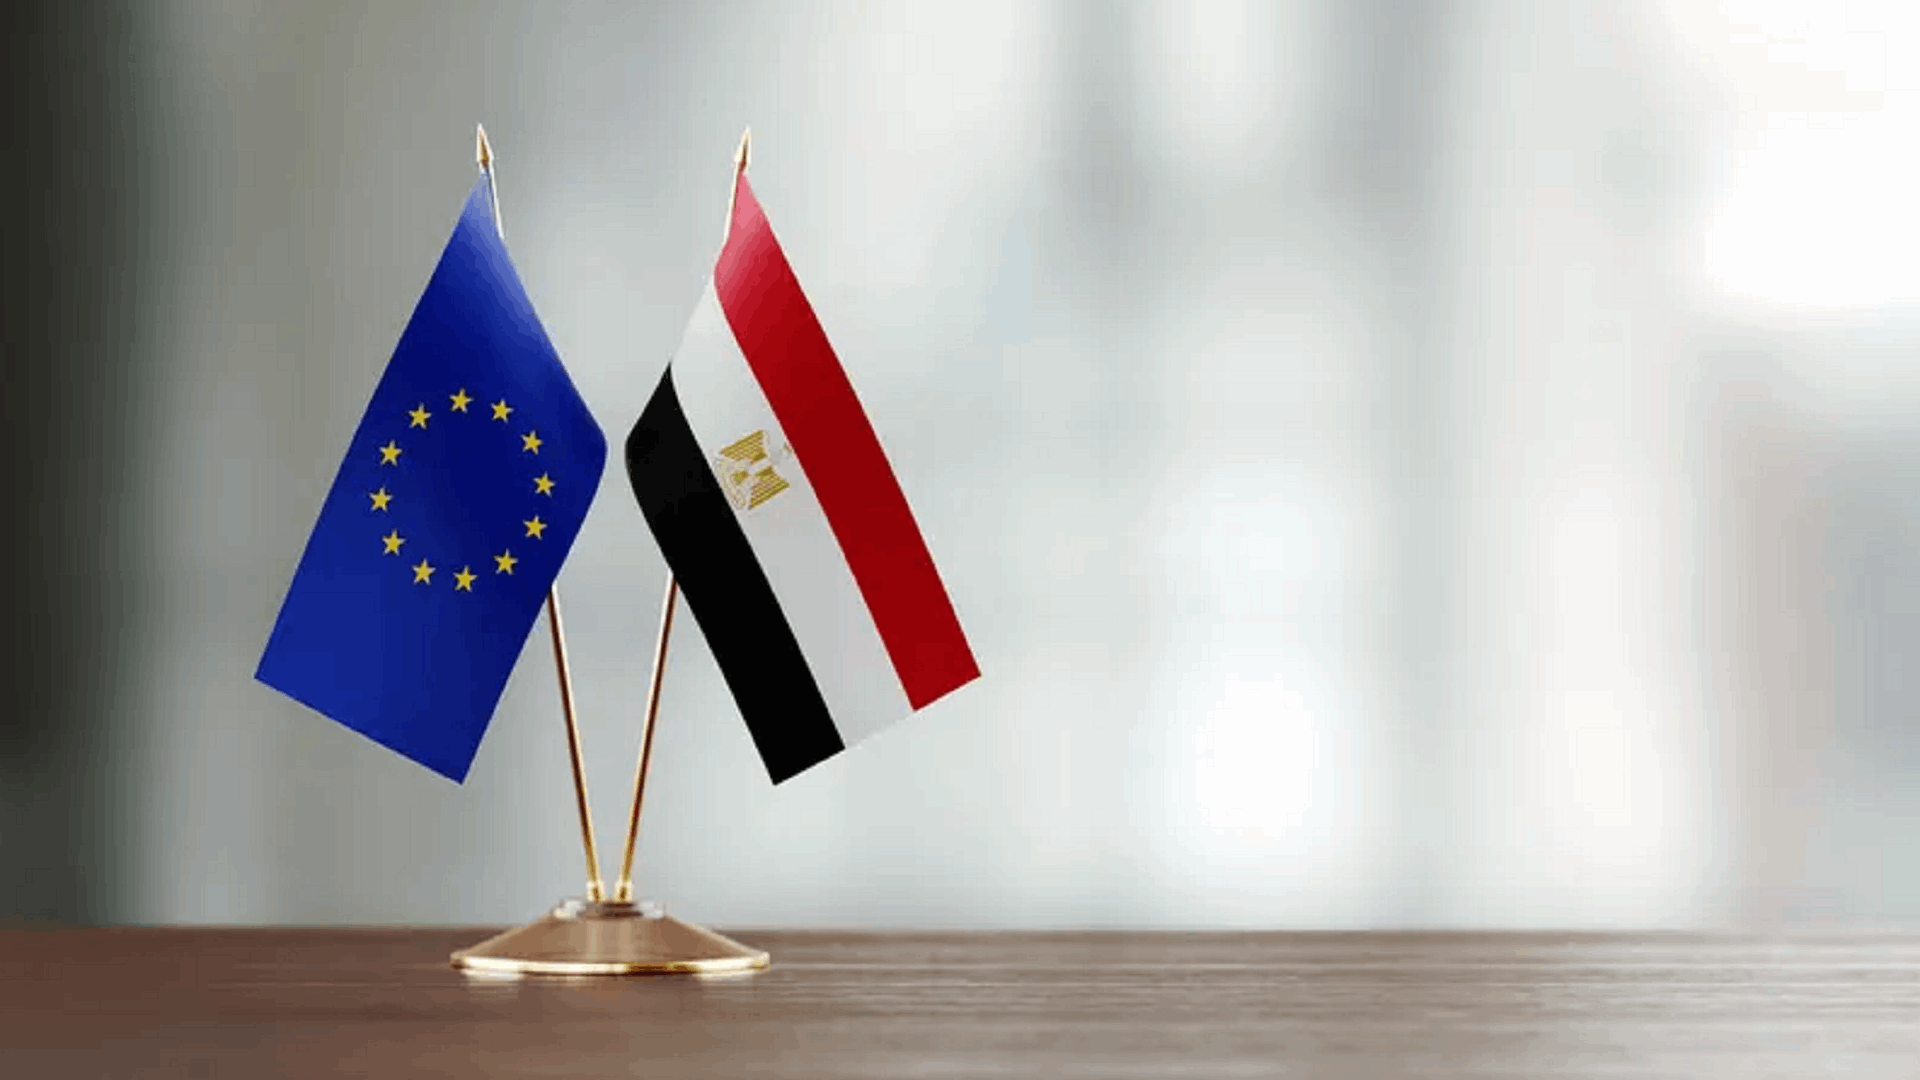 السيسي وفون دير لايين يفتتحان في القاهرة مؤتمراً مصرياً أوروبياً حول الاستثمارات